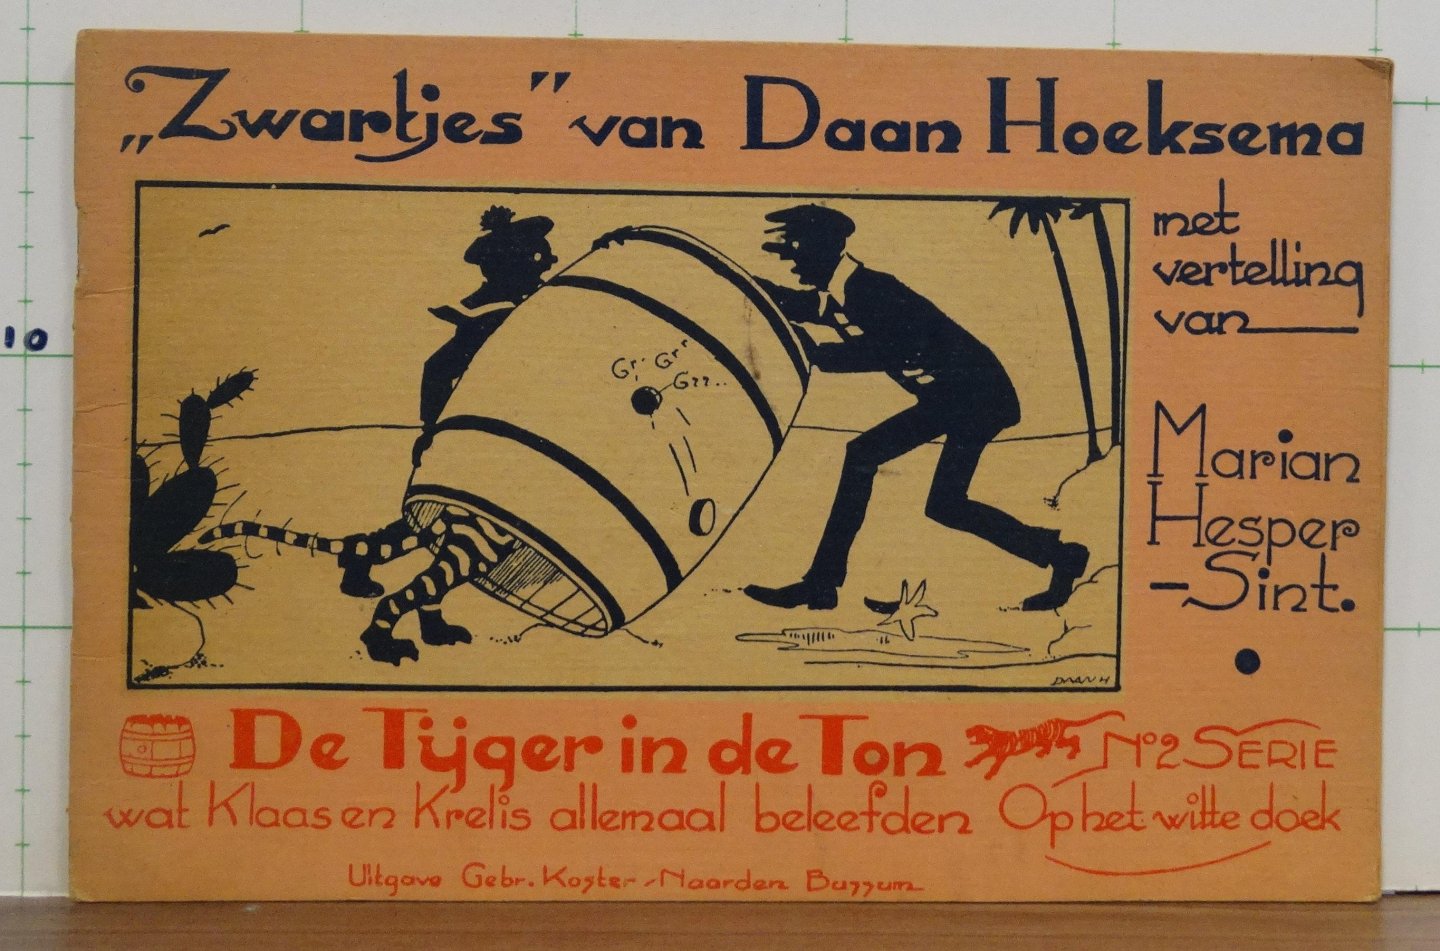 Hesper Sint, Marian - Hoeksema, Daan (ill.) - Zwartjes - serie op het witte doek nr.2 - de tijger in de ton wat Klaas en Krelis allemaal beleefden